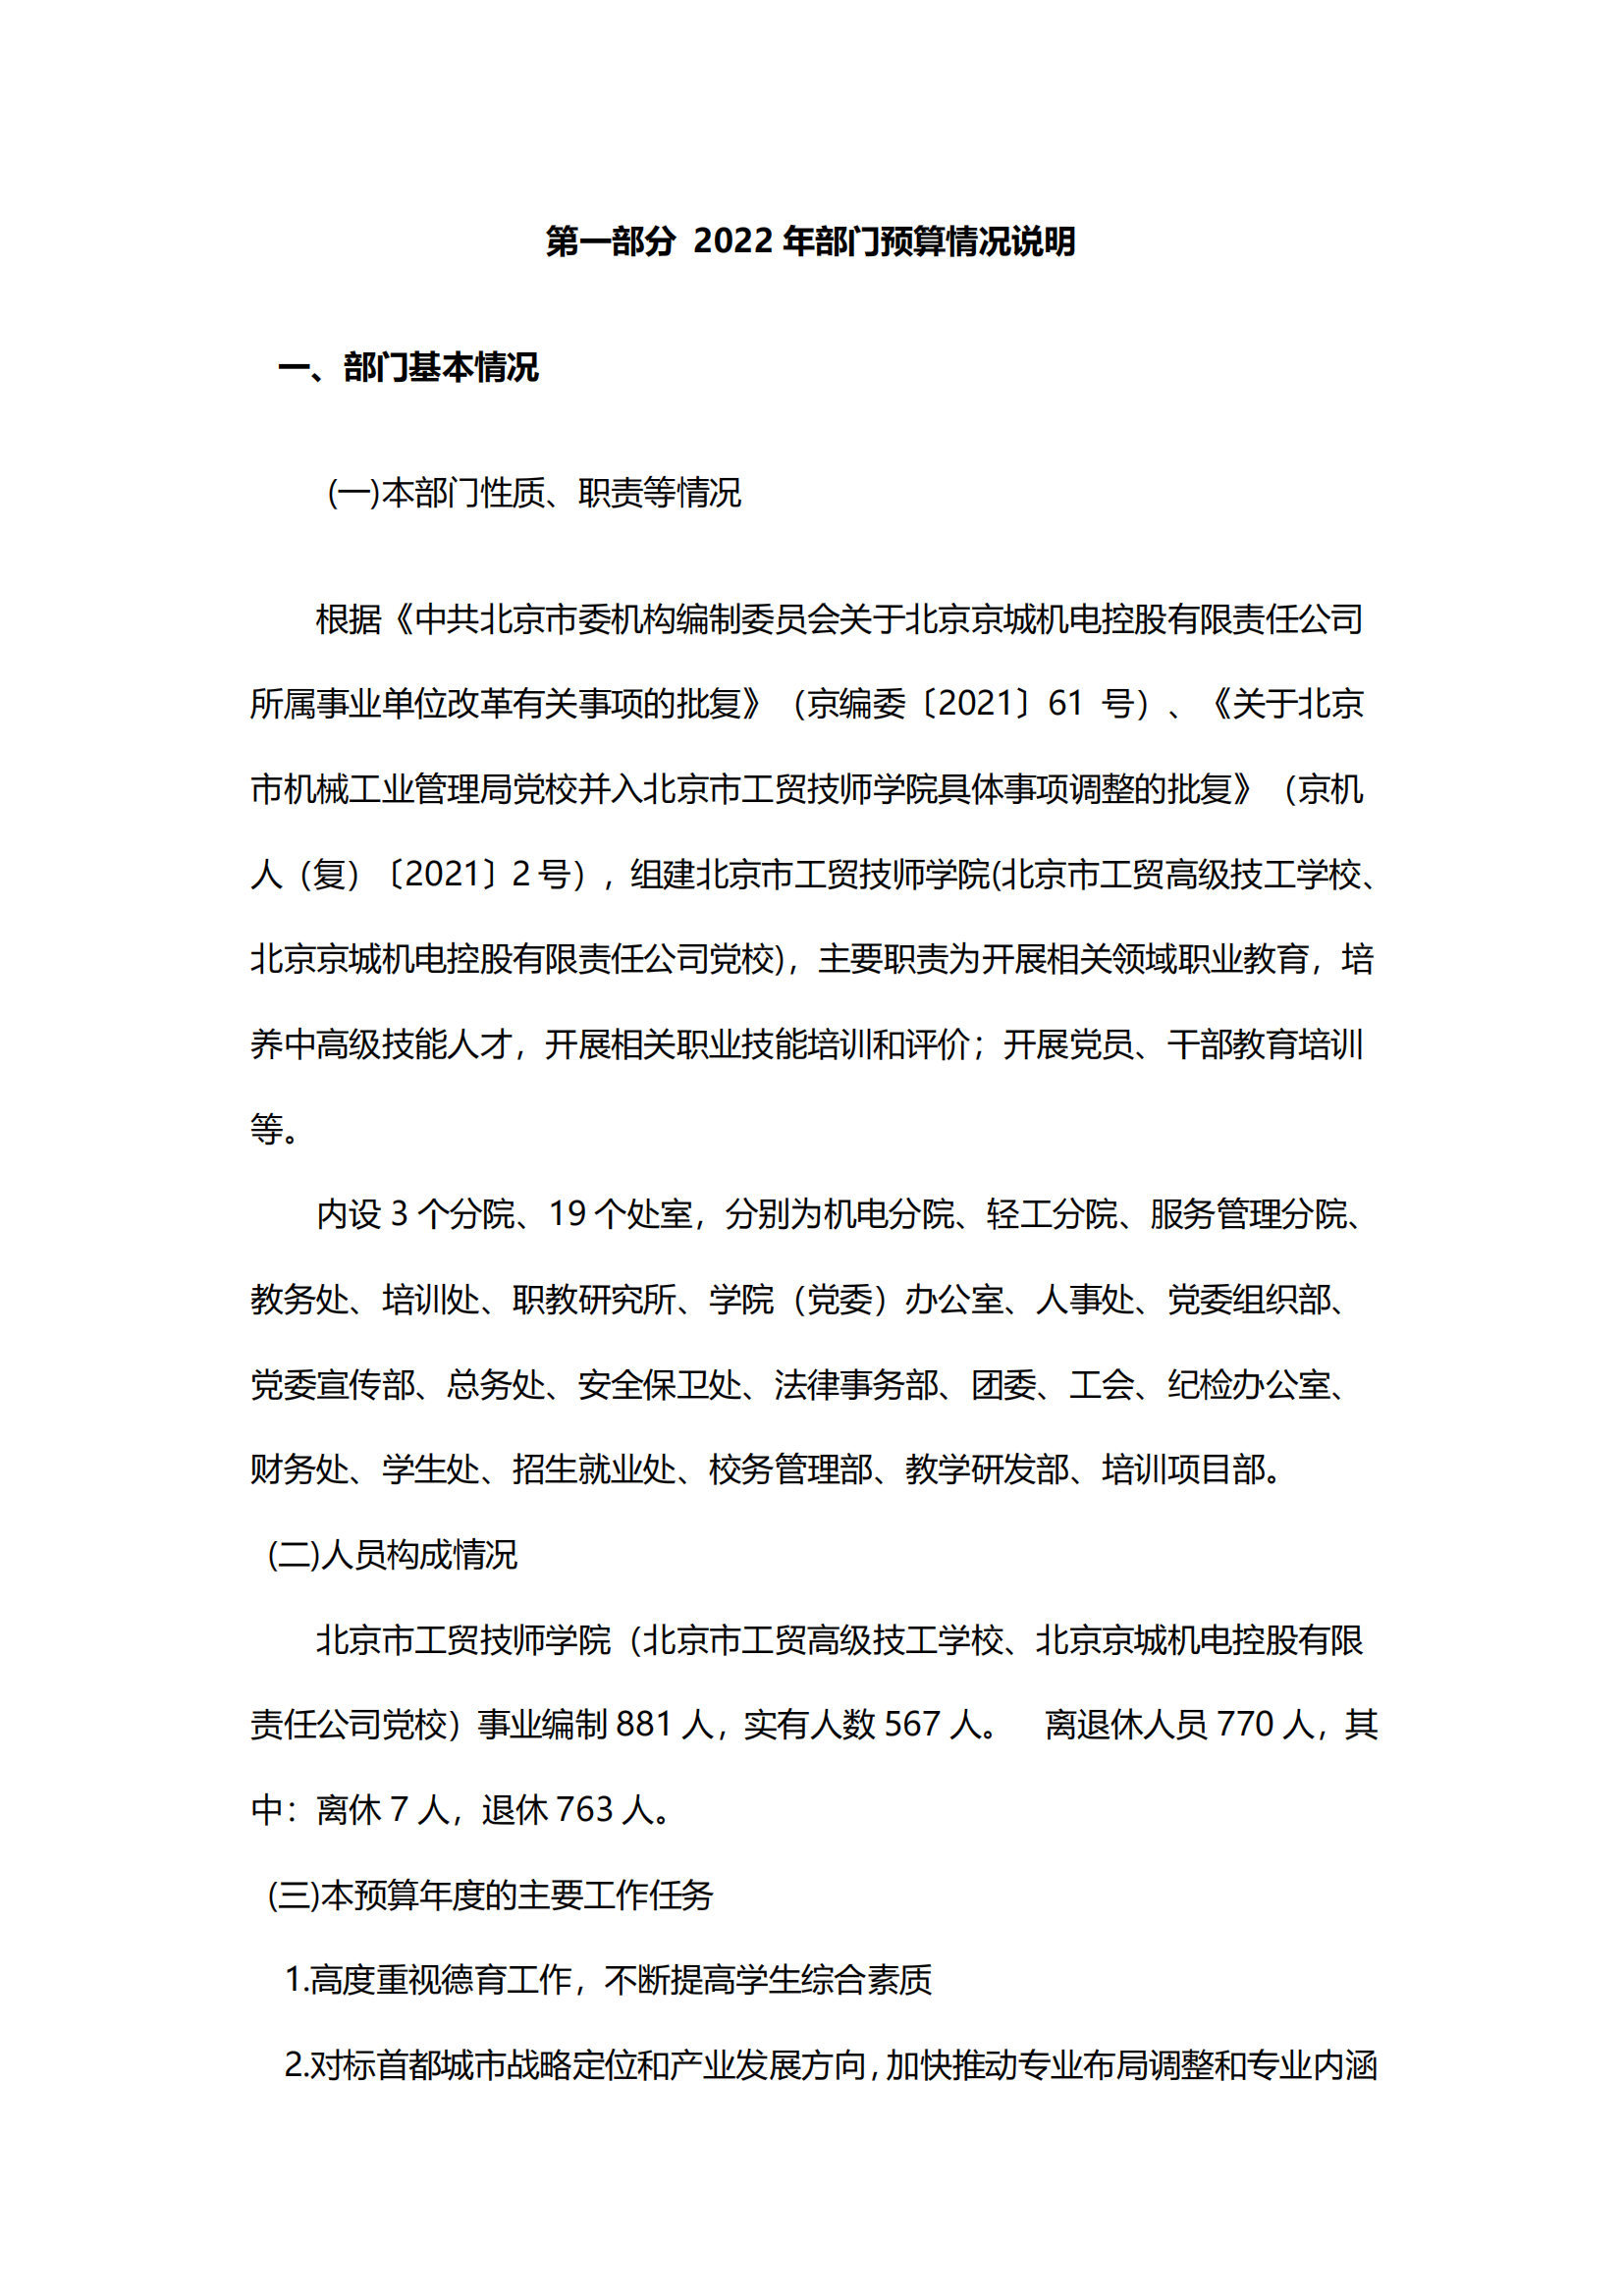 （新）北京市工贸技师学院2022年财政预算信息_02.png